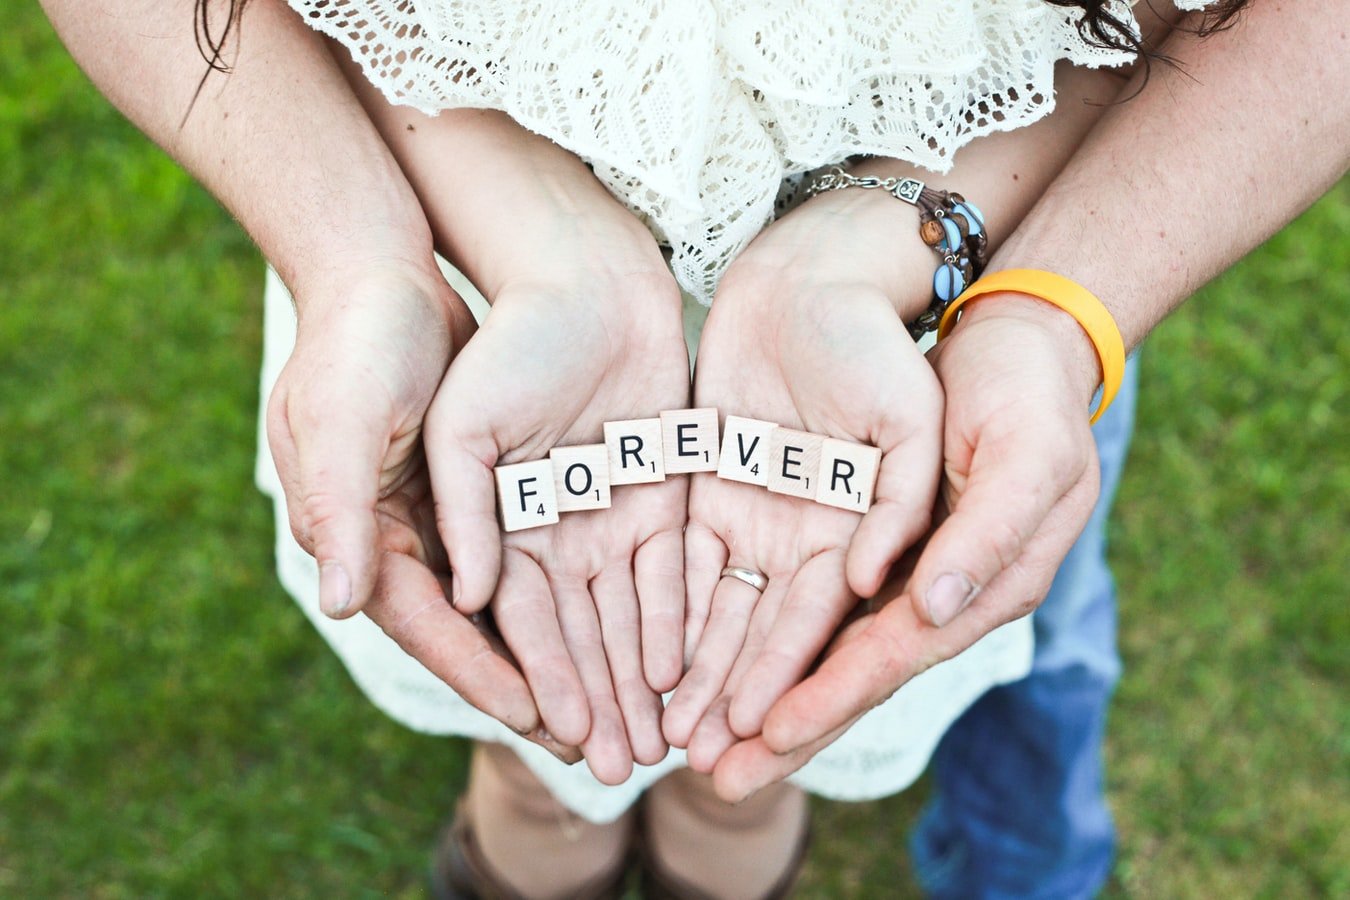 Paar hält das Wort "Forever" in den Händen | Quelle: Unsplash